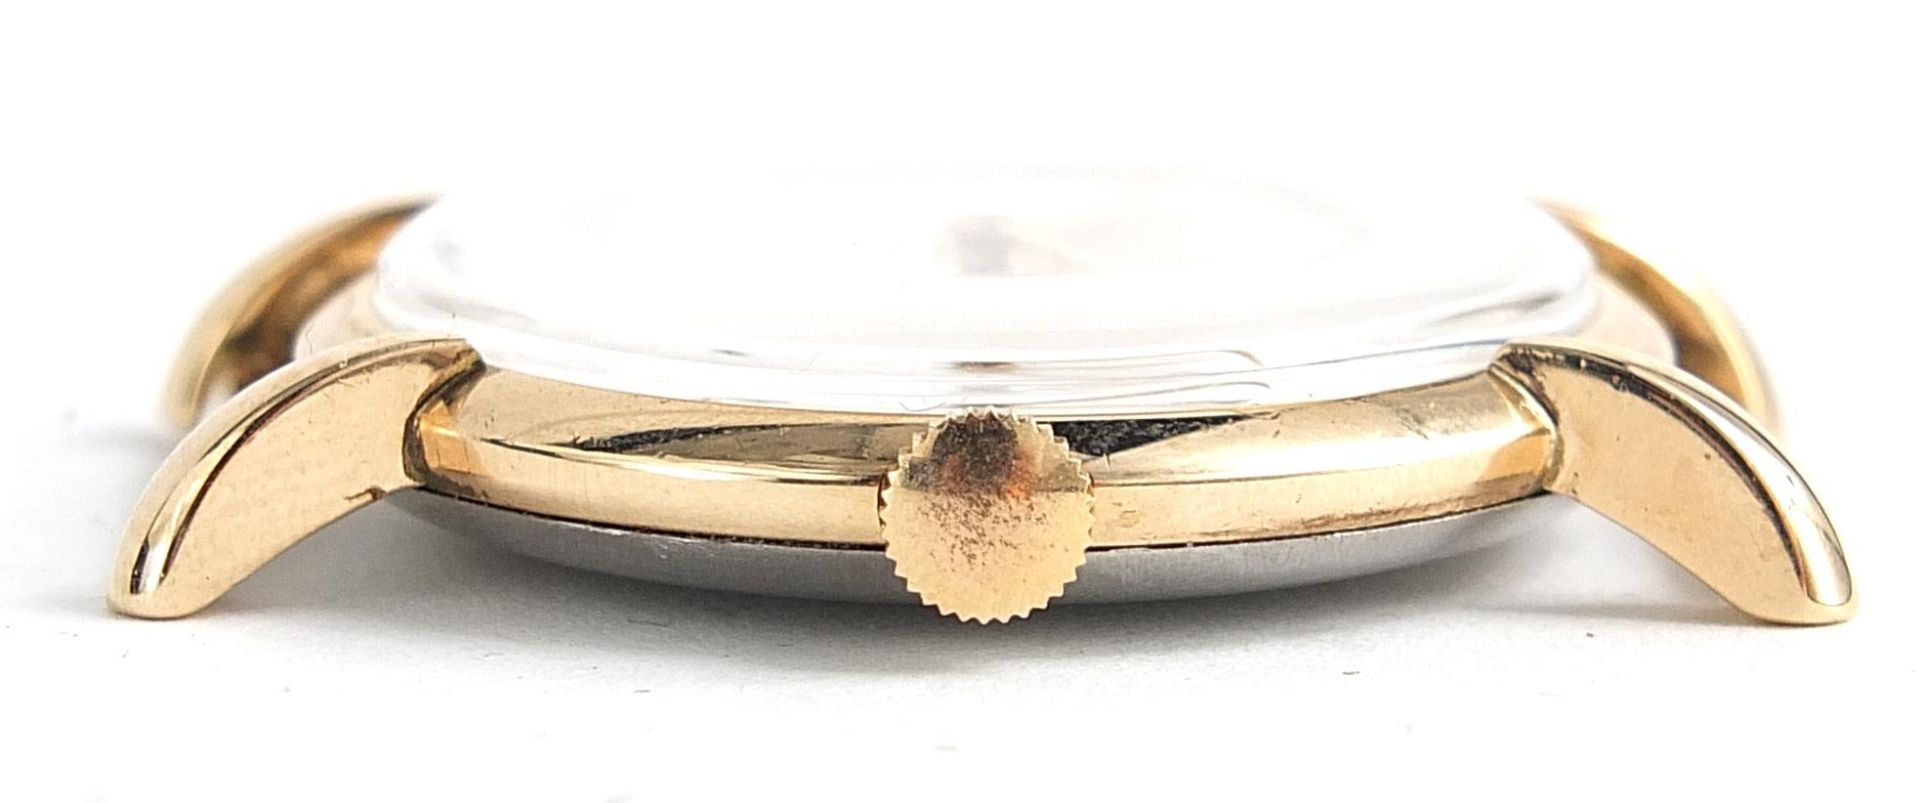 Rolex, gentlemen's Rolex Precision wristwatch, 35mm in diameter - Image 3 of 3